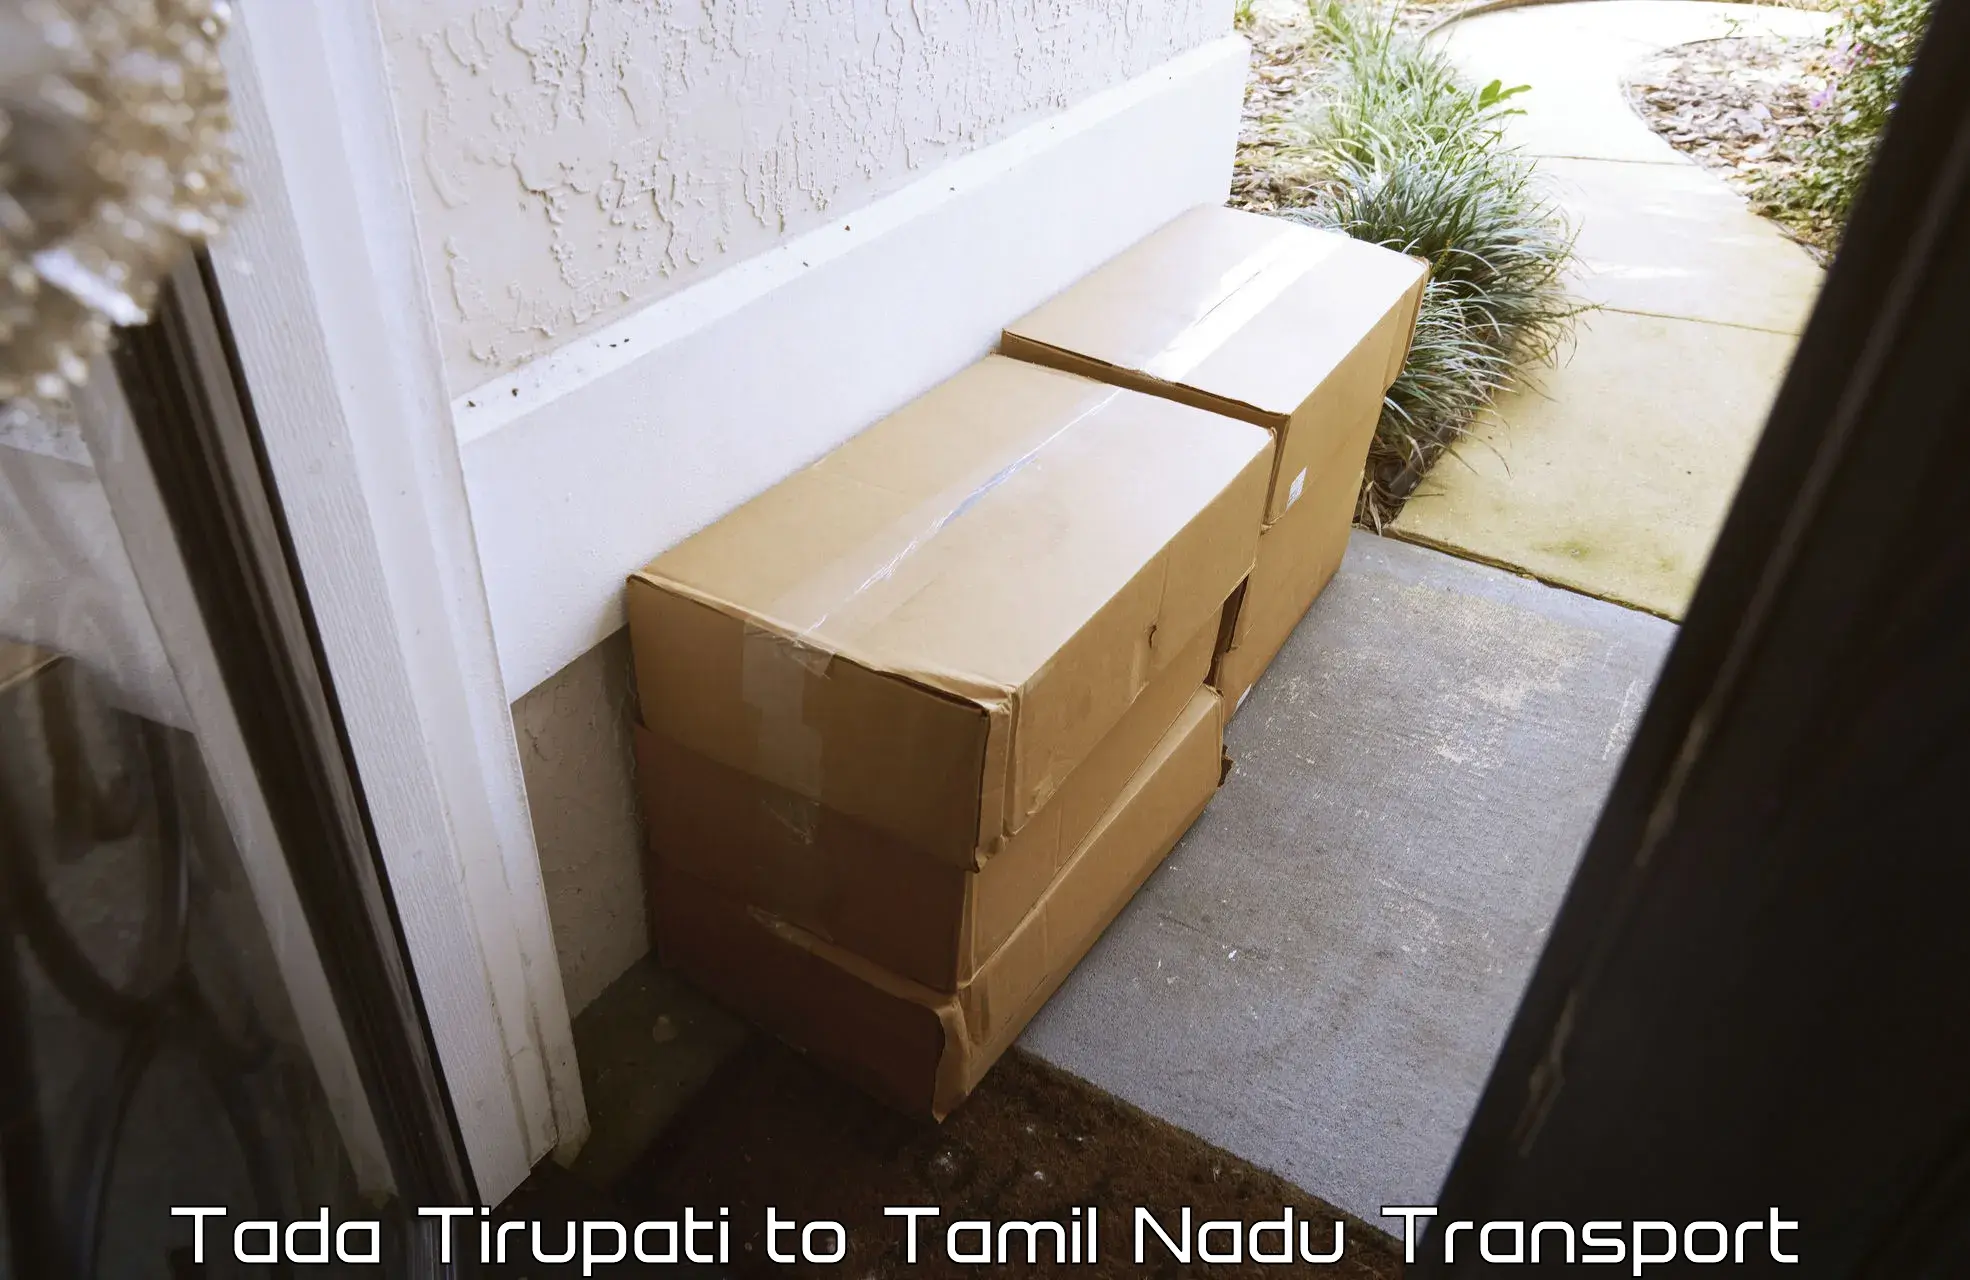 Cargo transport services Tada Tirupati to The Gandhigram Rural Institute